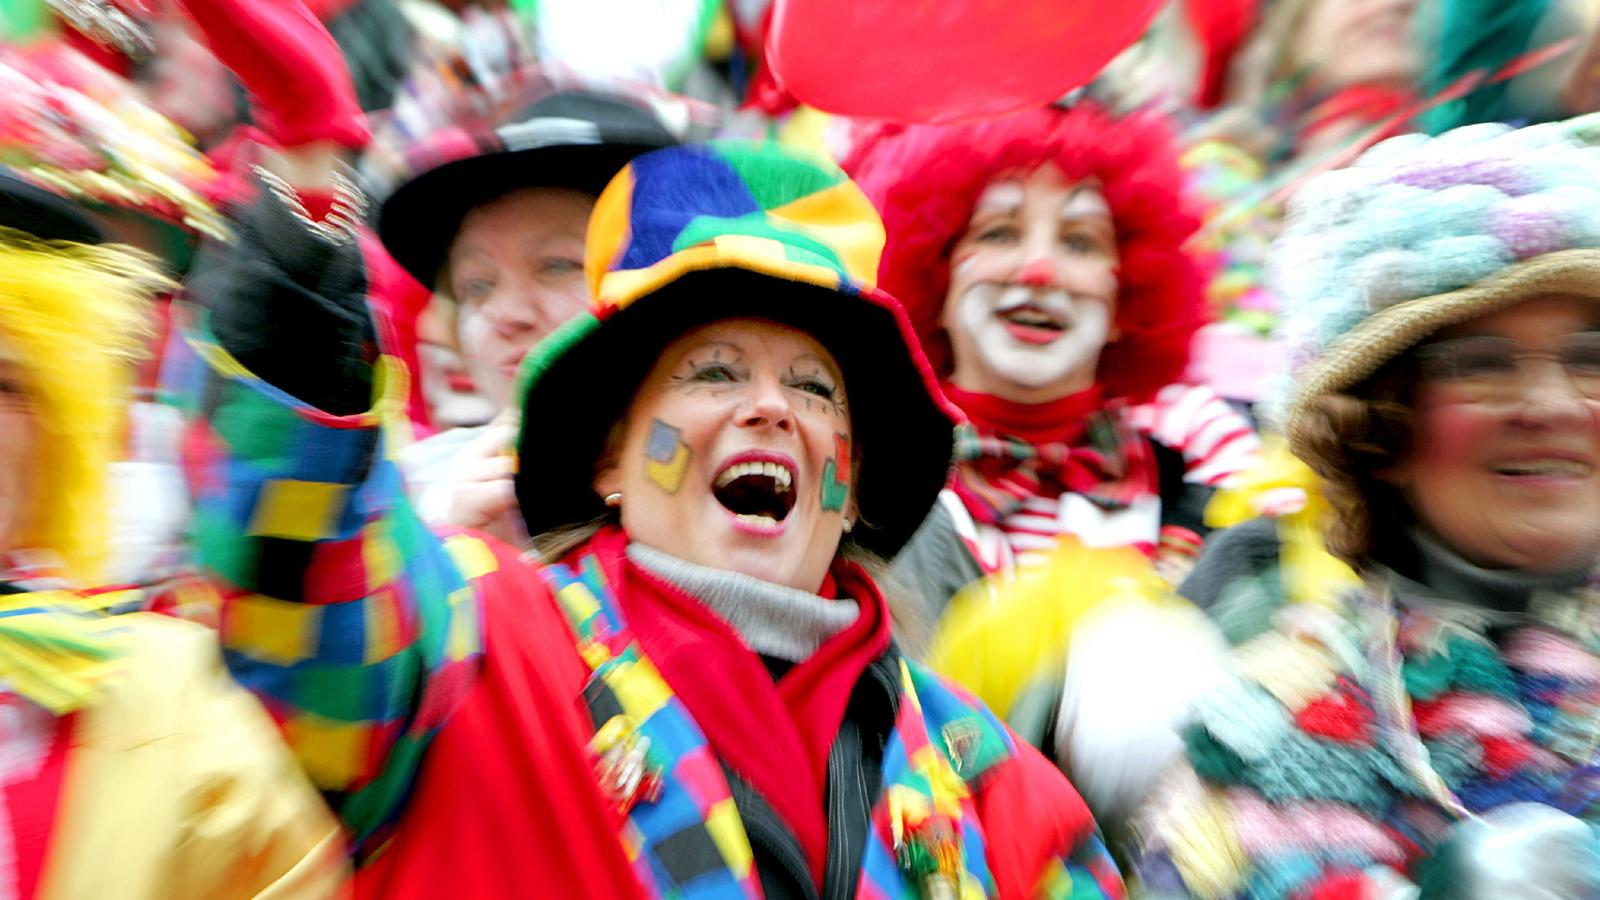 ARCHIV - Jecken feiern auf dem Alter Markt in Köln Karneval (Archivbild vom 15.02.2007). In den rheinischen Karnevalshochburgen beginnt am Dienstag (11.11.2008) um 11 Uhr 11 wieder die Narrenzeit. In Köln eröffnet das Dreigestirn aus Prinz, Bauer und